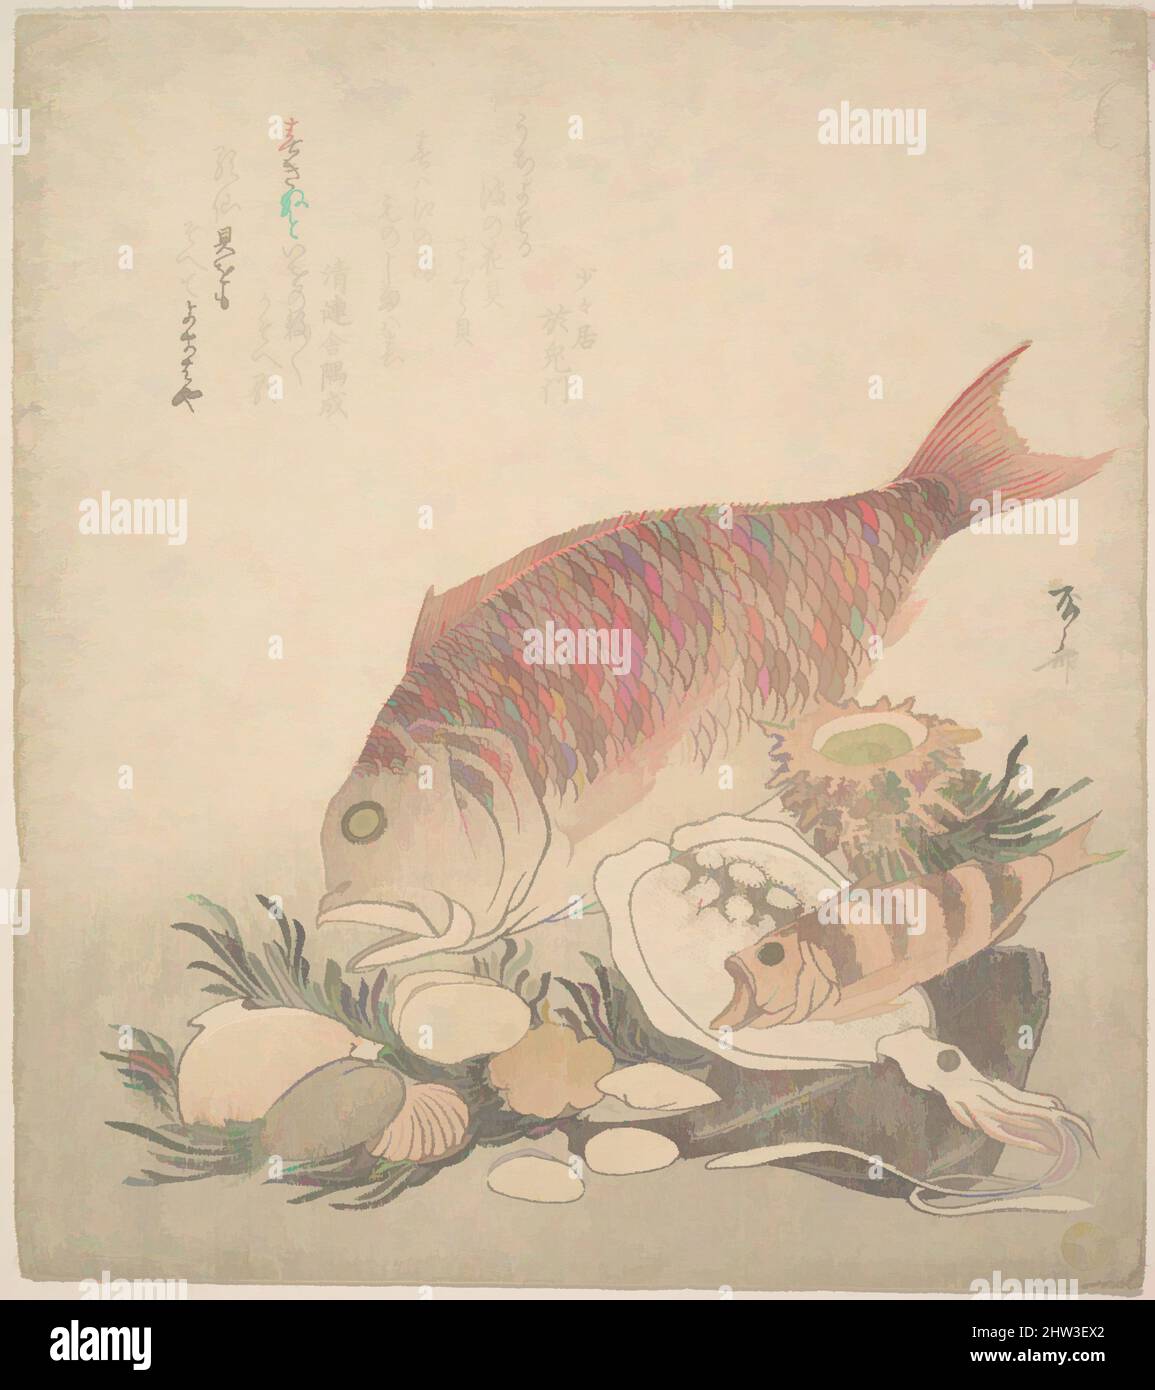 Kunst inspiriert von großen und kleinen Fischen Schwimmen zwischen Muscheln und Moos am Meeresgrund, Edo-Zeit (1615–1868), ca. 1830, Japan, Polychromer Holzschnitt (Surimono); Tinte und Farbe auf Papier, 8 5/8 x 7 5/8 Zoll (21,9 x 19,4 cm), Drucke, Ryūryūkyo Shinsai (japanisch, aktiv ca. 1799, Classic Works modernisiert von Artotop mit einem Schuss Moderne. Formen, Farbe und Wert, auffällige visuelle Wirkung auf Kunst. Emotionen durch Freiheit von Kunstwerken auf zeitgemäße Weise. Eine zeitlose Botschaft, die eine wild kreative neue Richtung verfolgt. Künstler, die sich dem digitalen Medium zuwenden und die Artotop NFT erschaffen Stockfoto